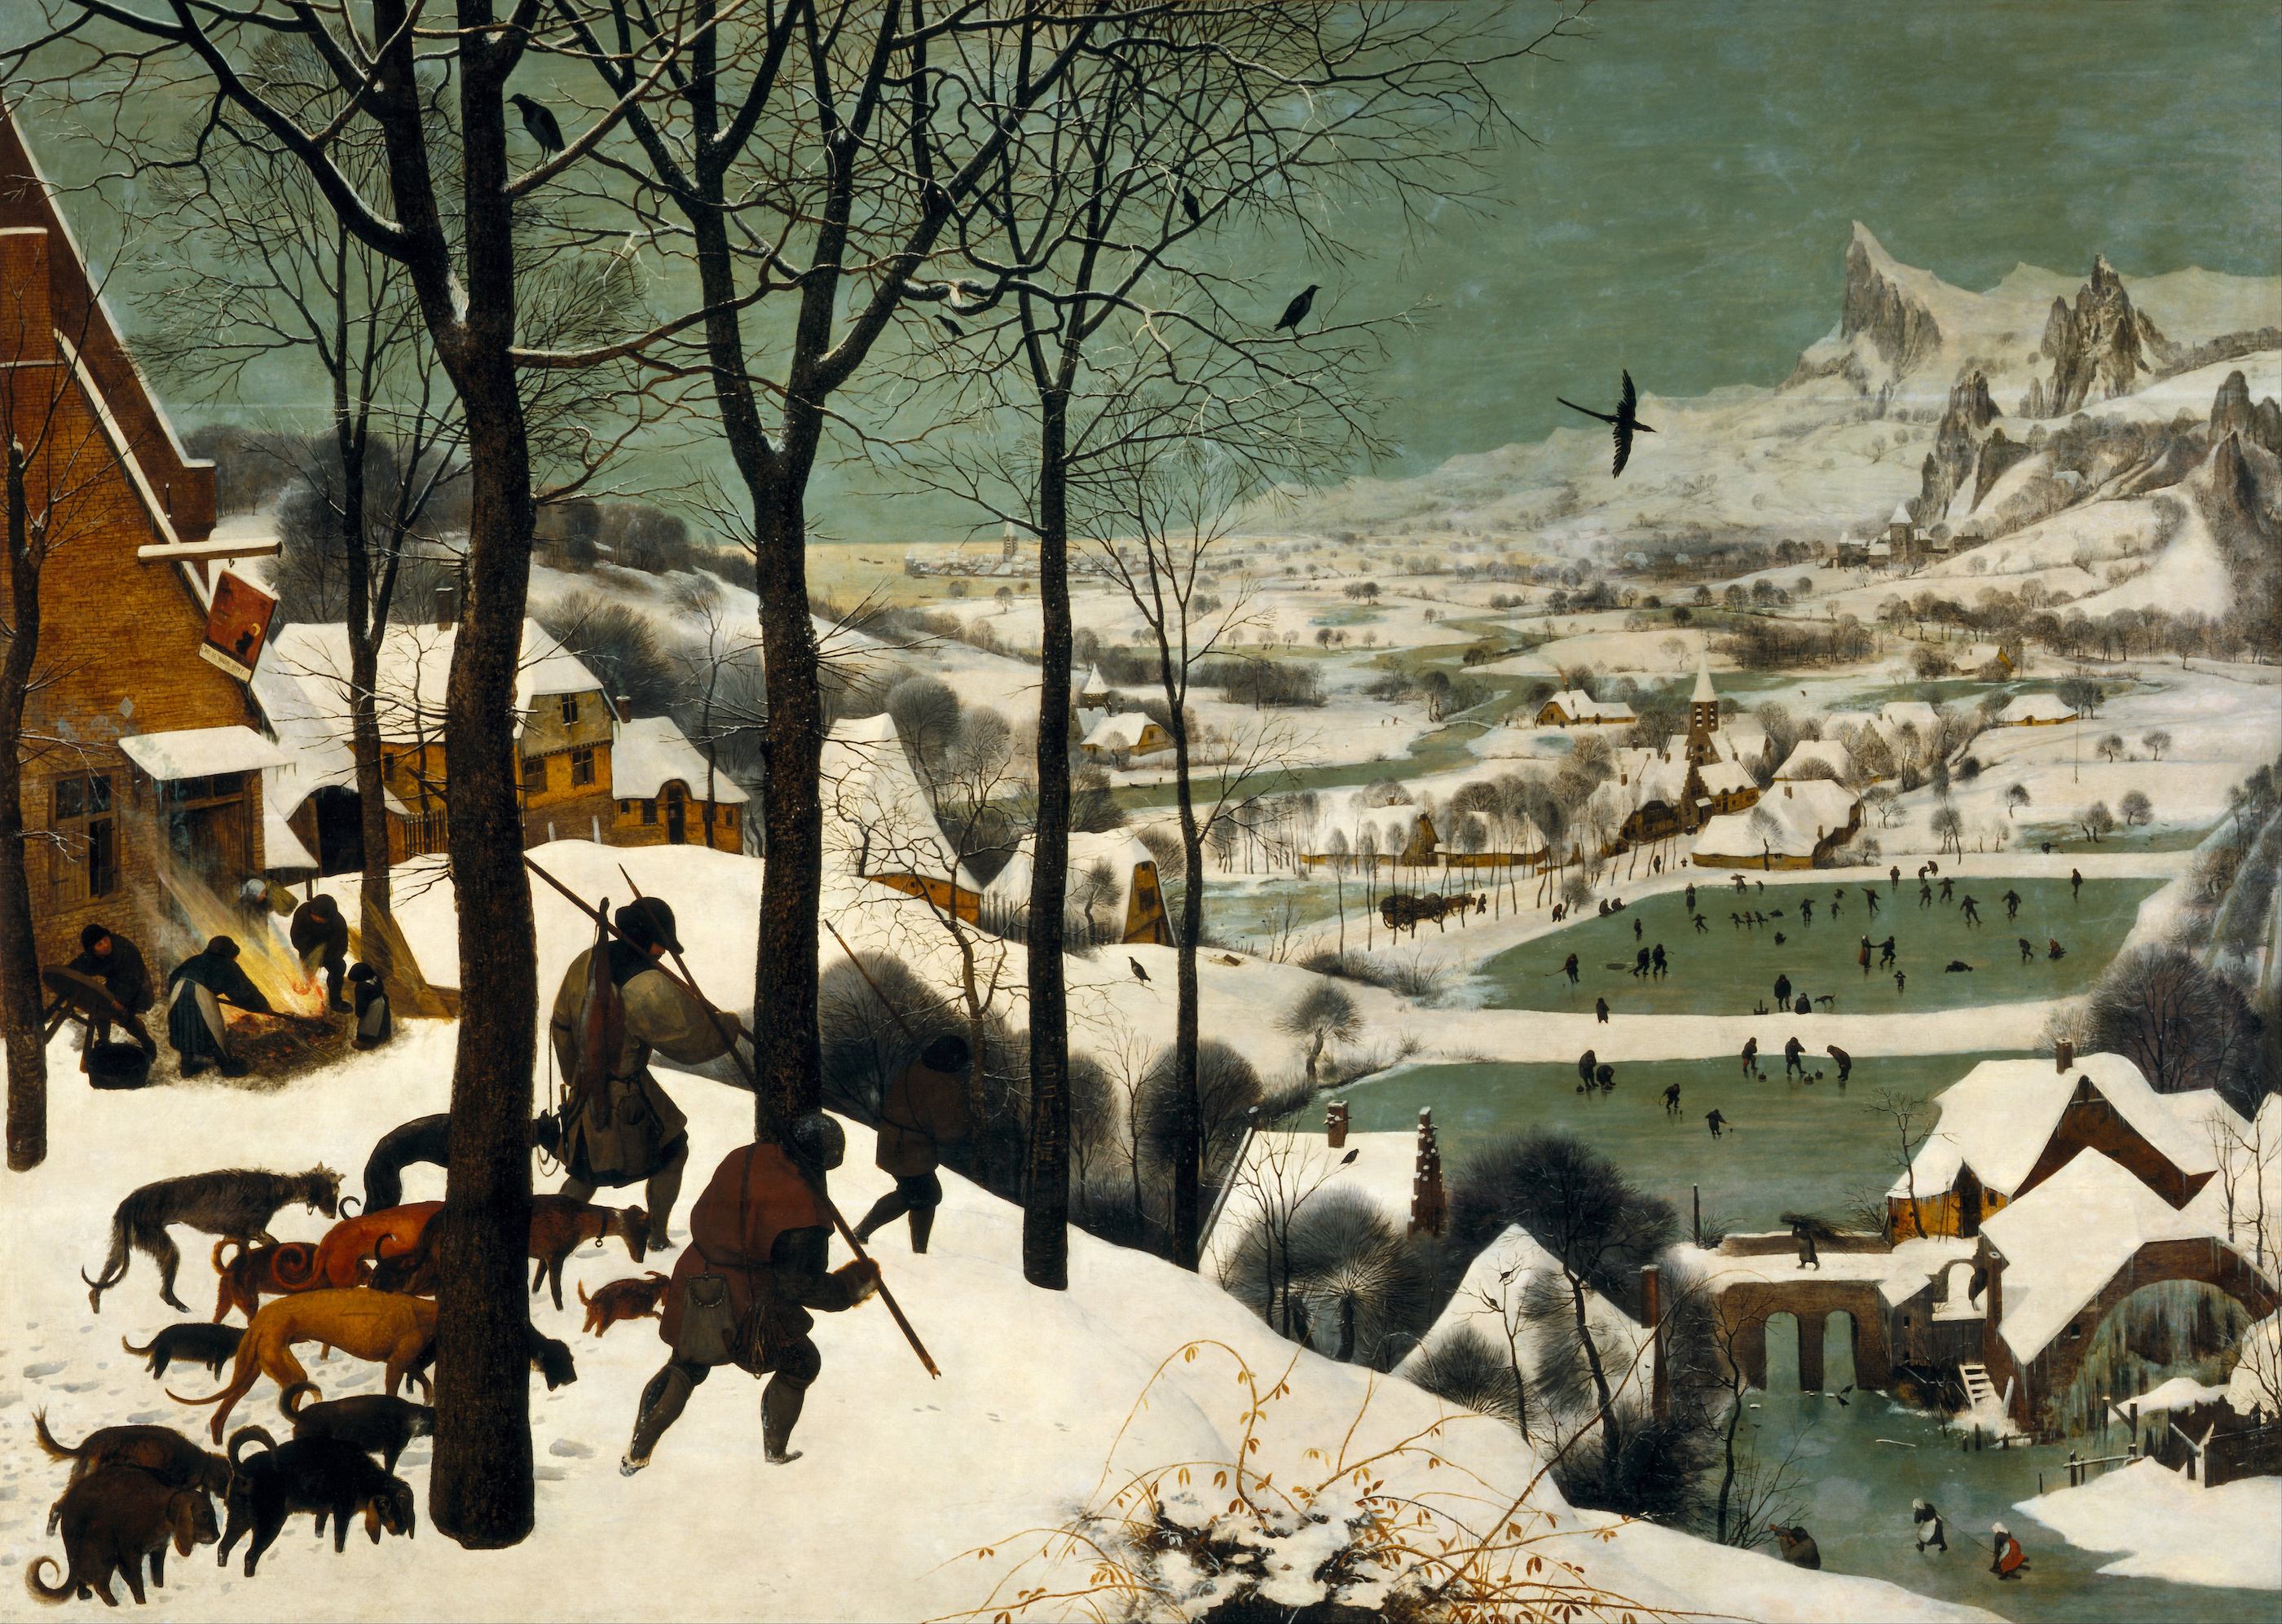 雪中猎人 by 老彼得· 勃鲁盖尔 - 1565 - 162 x 117 厘米 艺术史博物馆